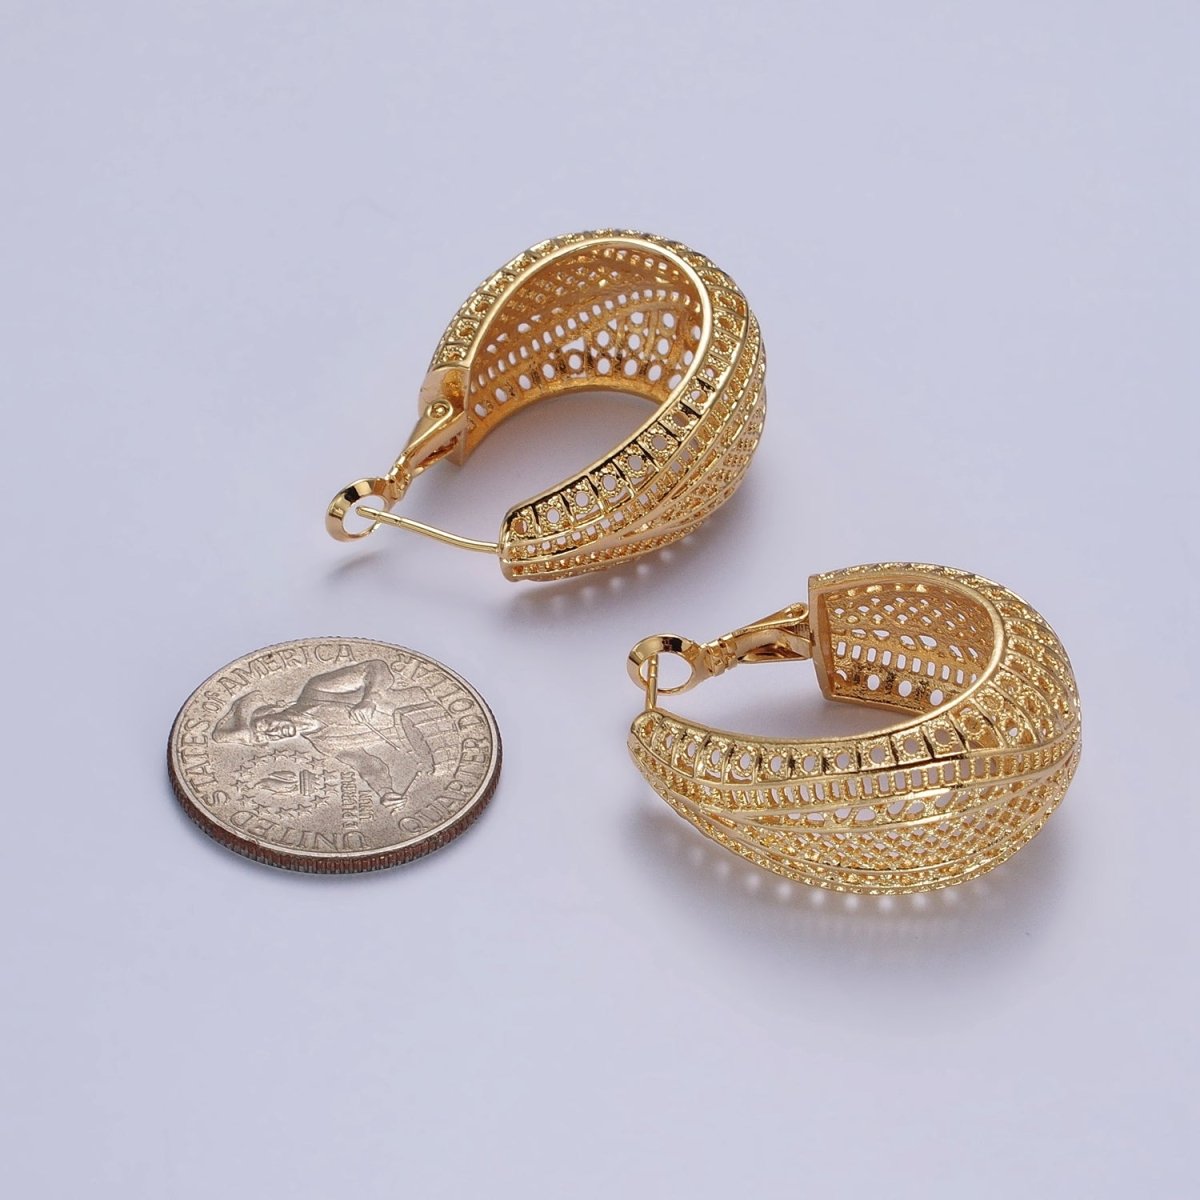 25mm Gold Filigree-Patterned Dome Hinge Hoop Earrings | AB204 - DLUXCA